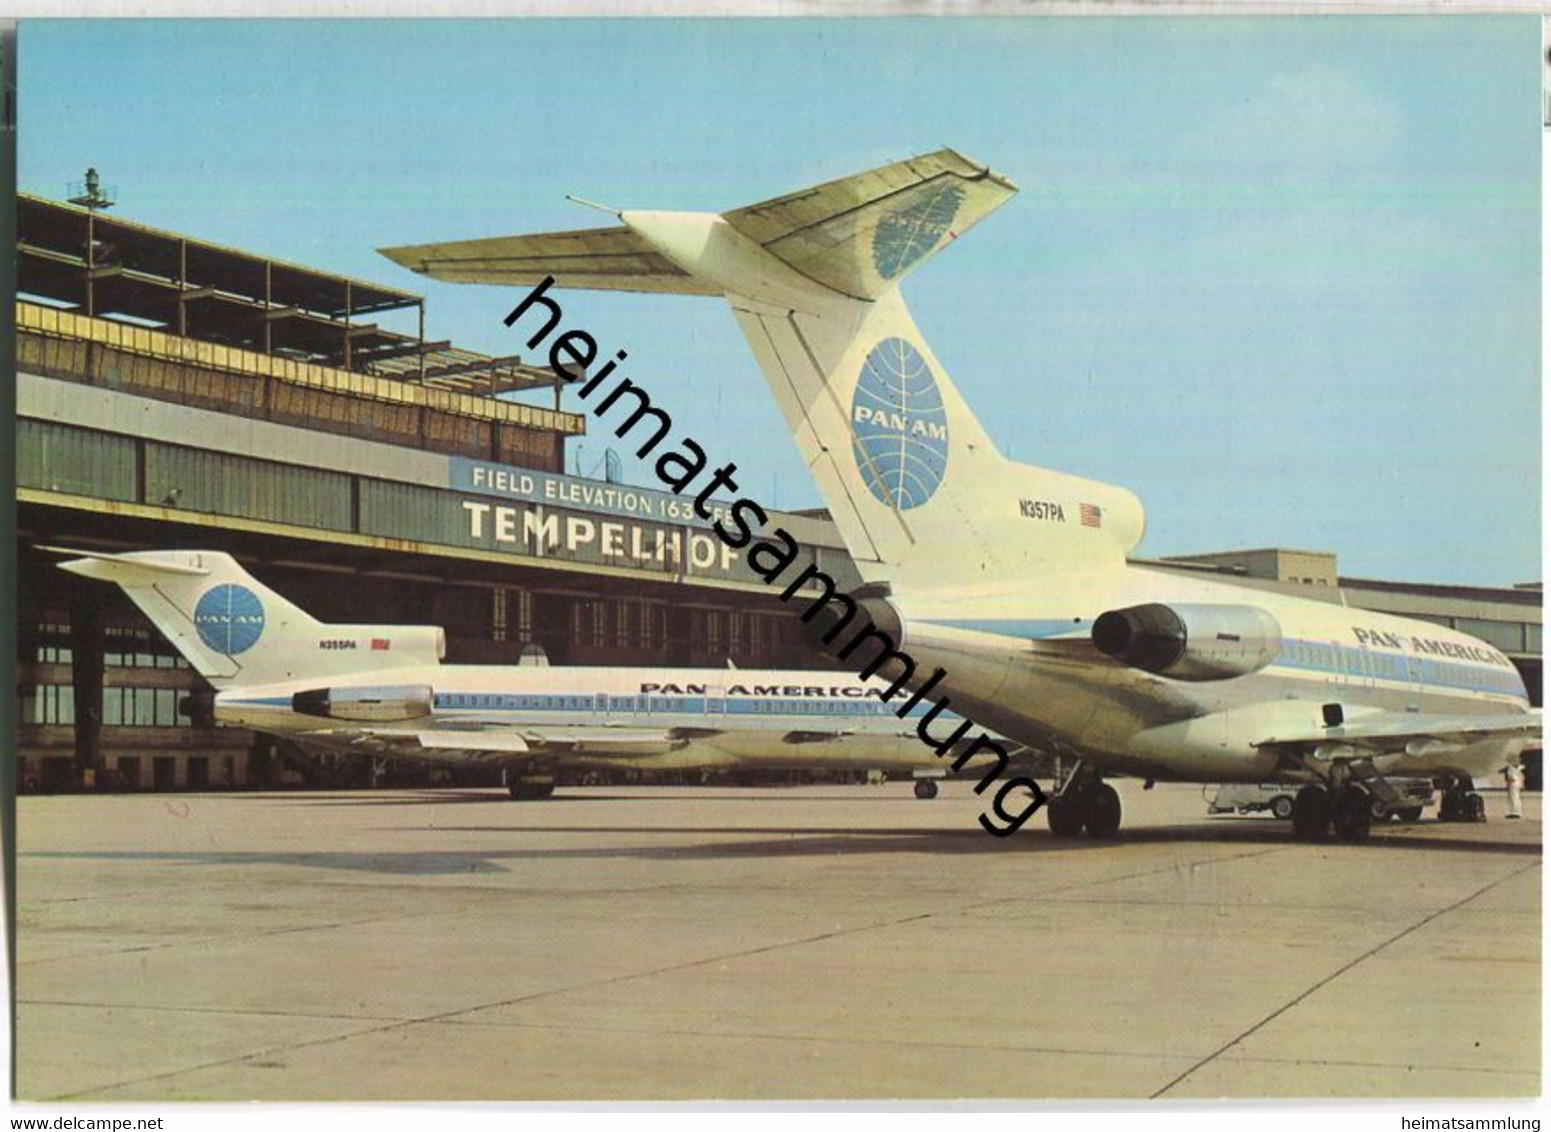 Berlin-Tempelhof - Flughafen - PanAm Nr. N355PA N357PA - Verlag Andres + Co Berlin - Tempelhof